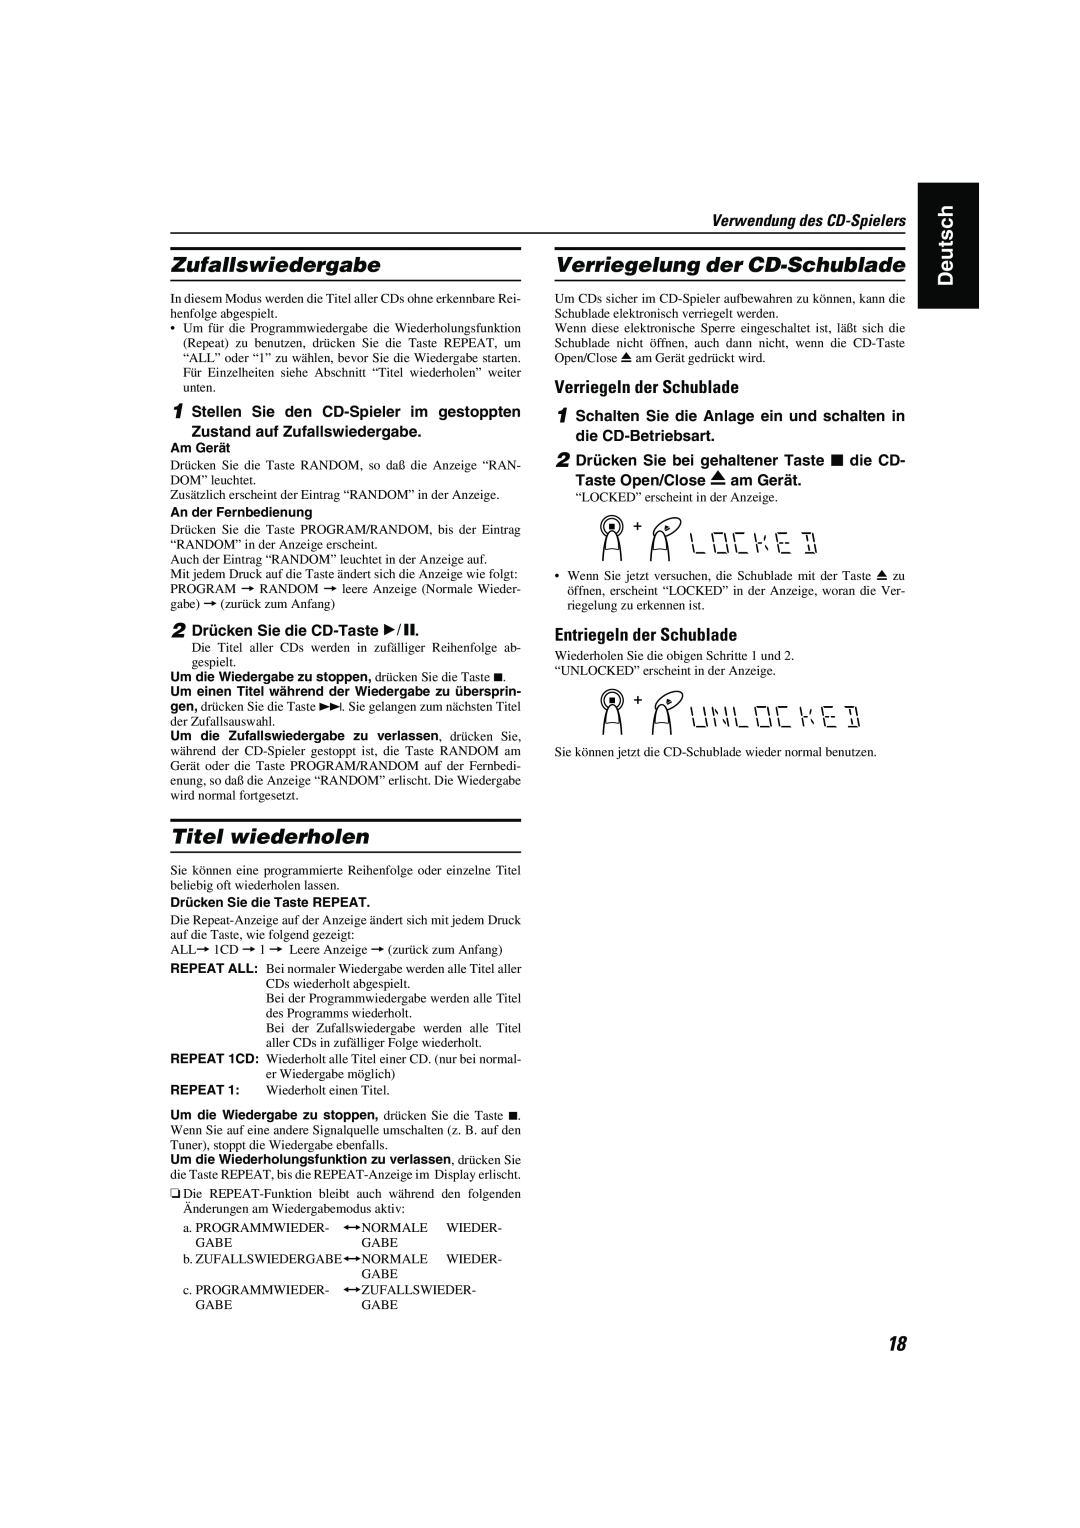 JVC CA-MXK10R manual Zufallswiedergabe, Verriegelung der CD-Schublade, Titel wiederholen, Verriegeln der Schublade, Deutsch 